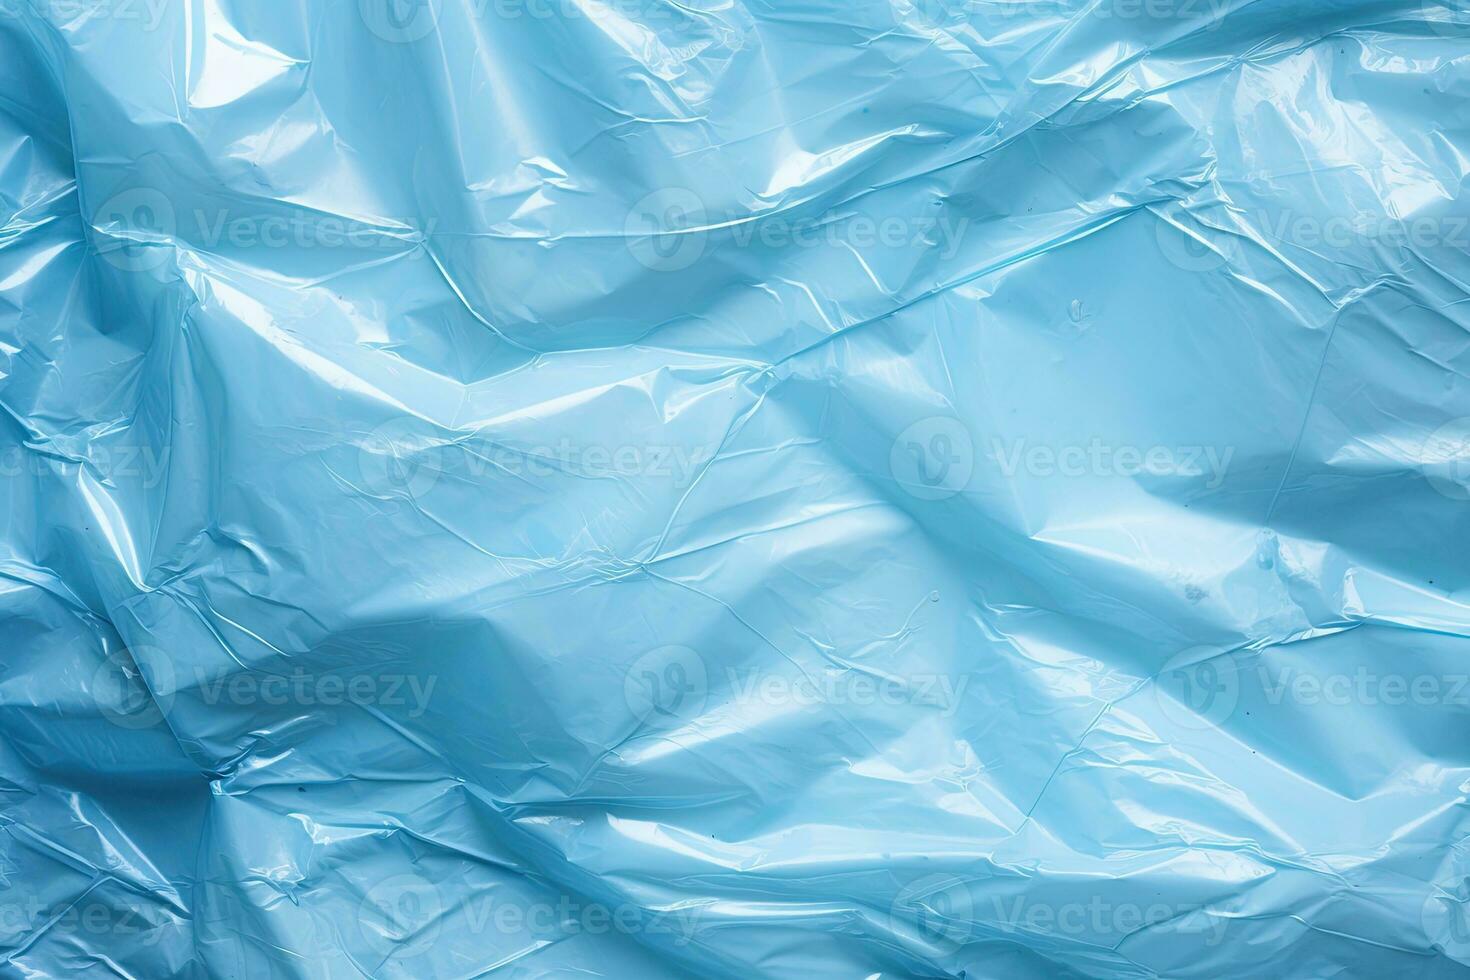 helder blauw plastic inpakken bedekking achtergrond. verfrommeld en gedrapeerd getextureerde cellofaan materiaal foto